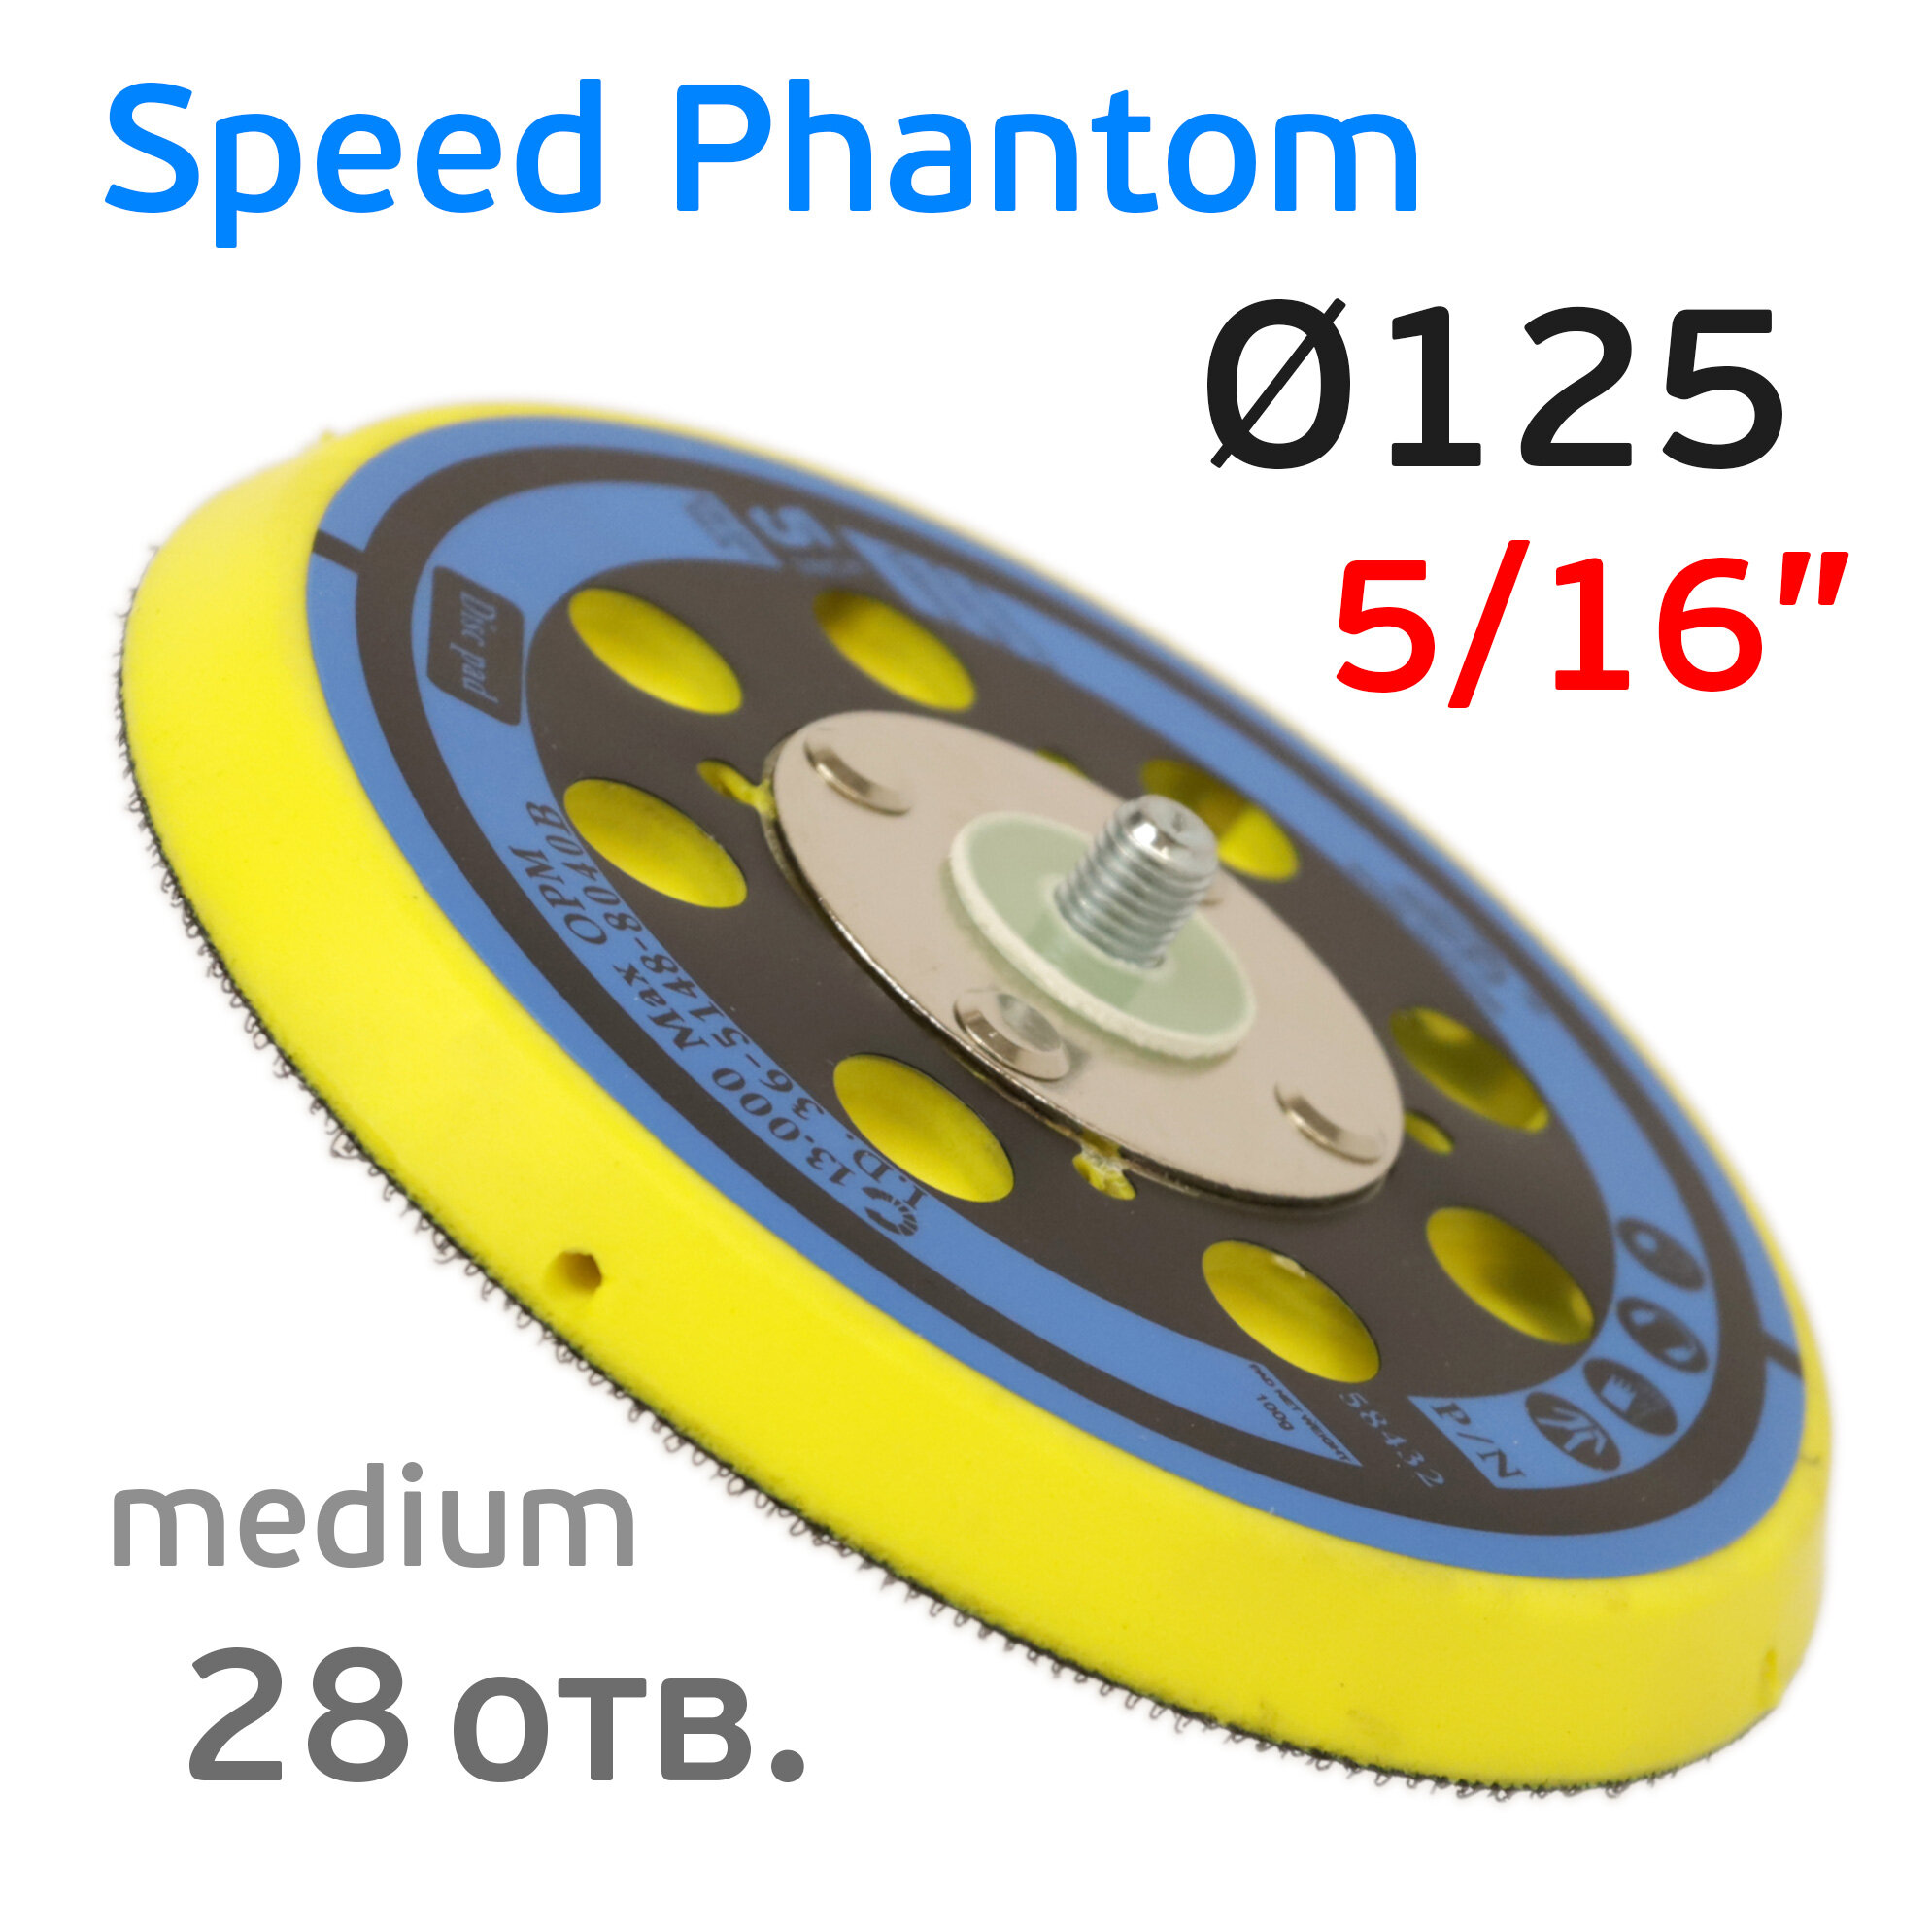 Подошва (125мм 5/16" 28отв.) Speed Phantom (средняя) для Deros Ceros Pros Schtaer